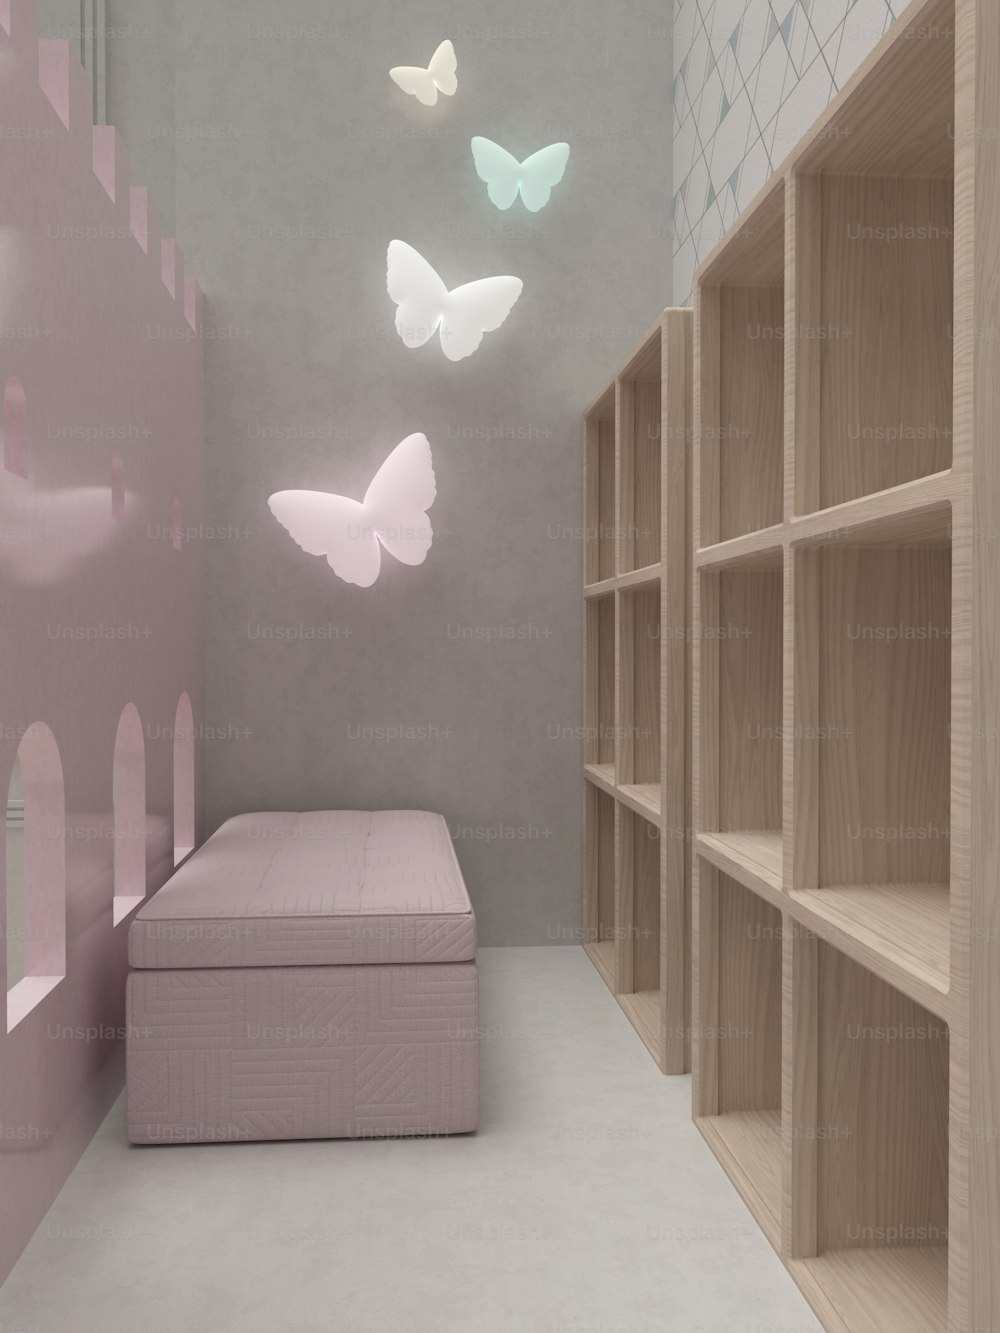 Una habitación con una cama, estantes y mariposas en la pared